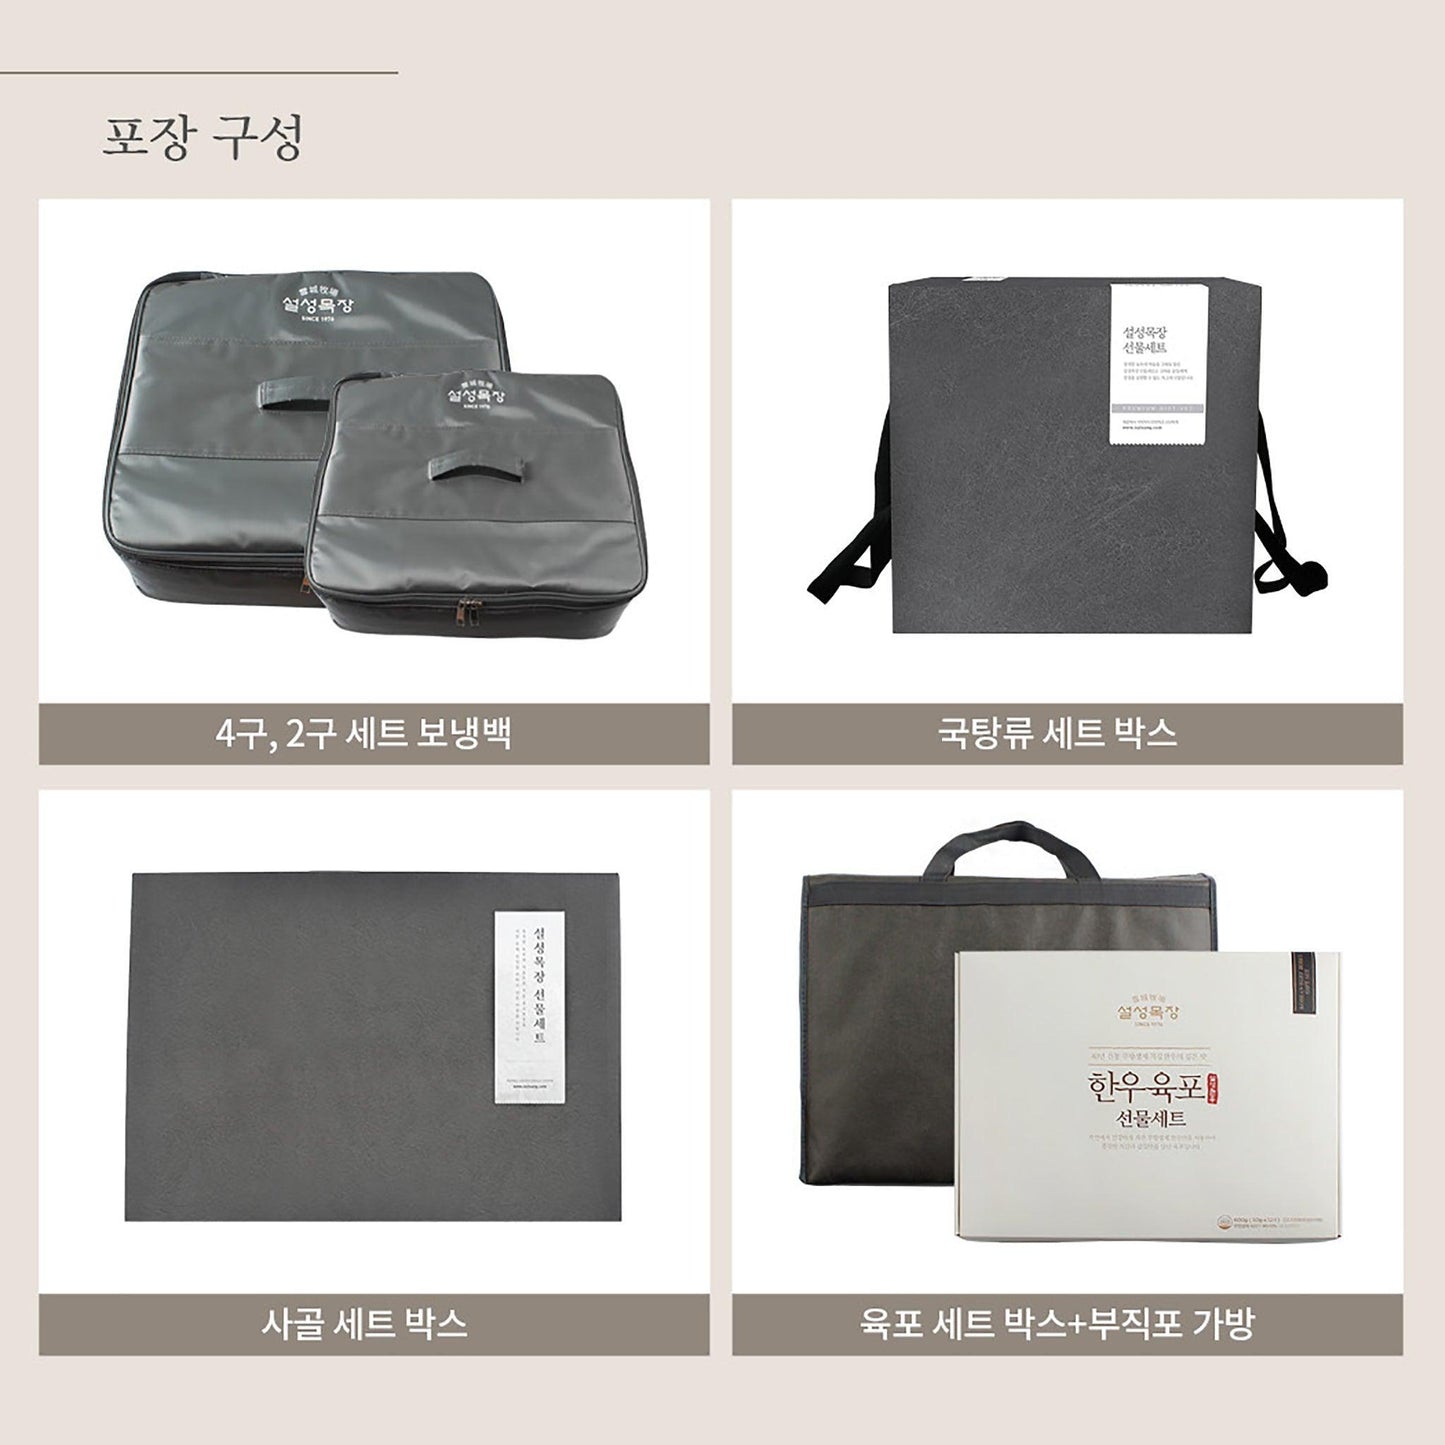 설성목장 명품 도가니탕 세트 (Delivery Available Only in Korea) - Kim'C Market